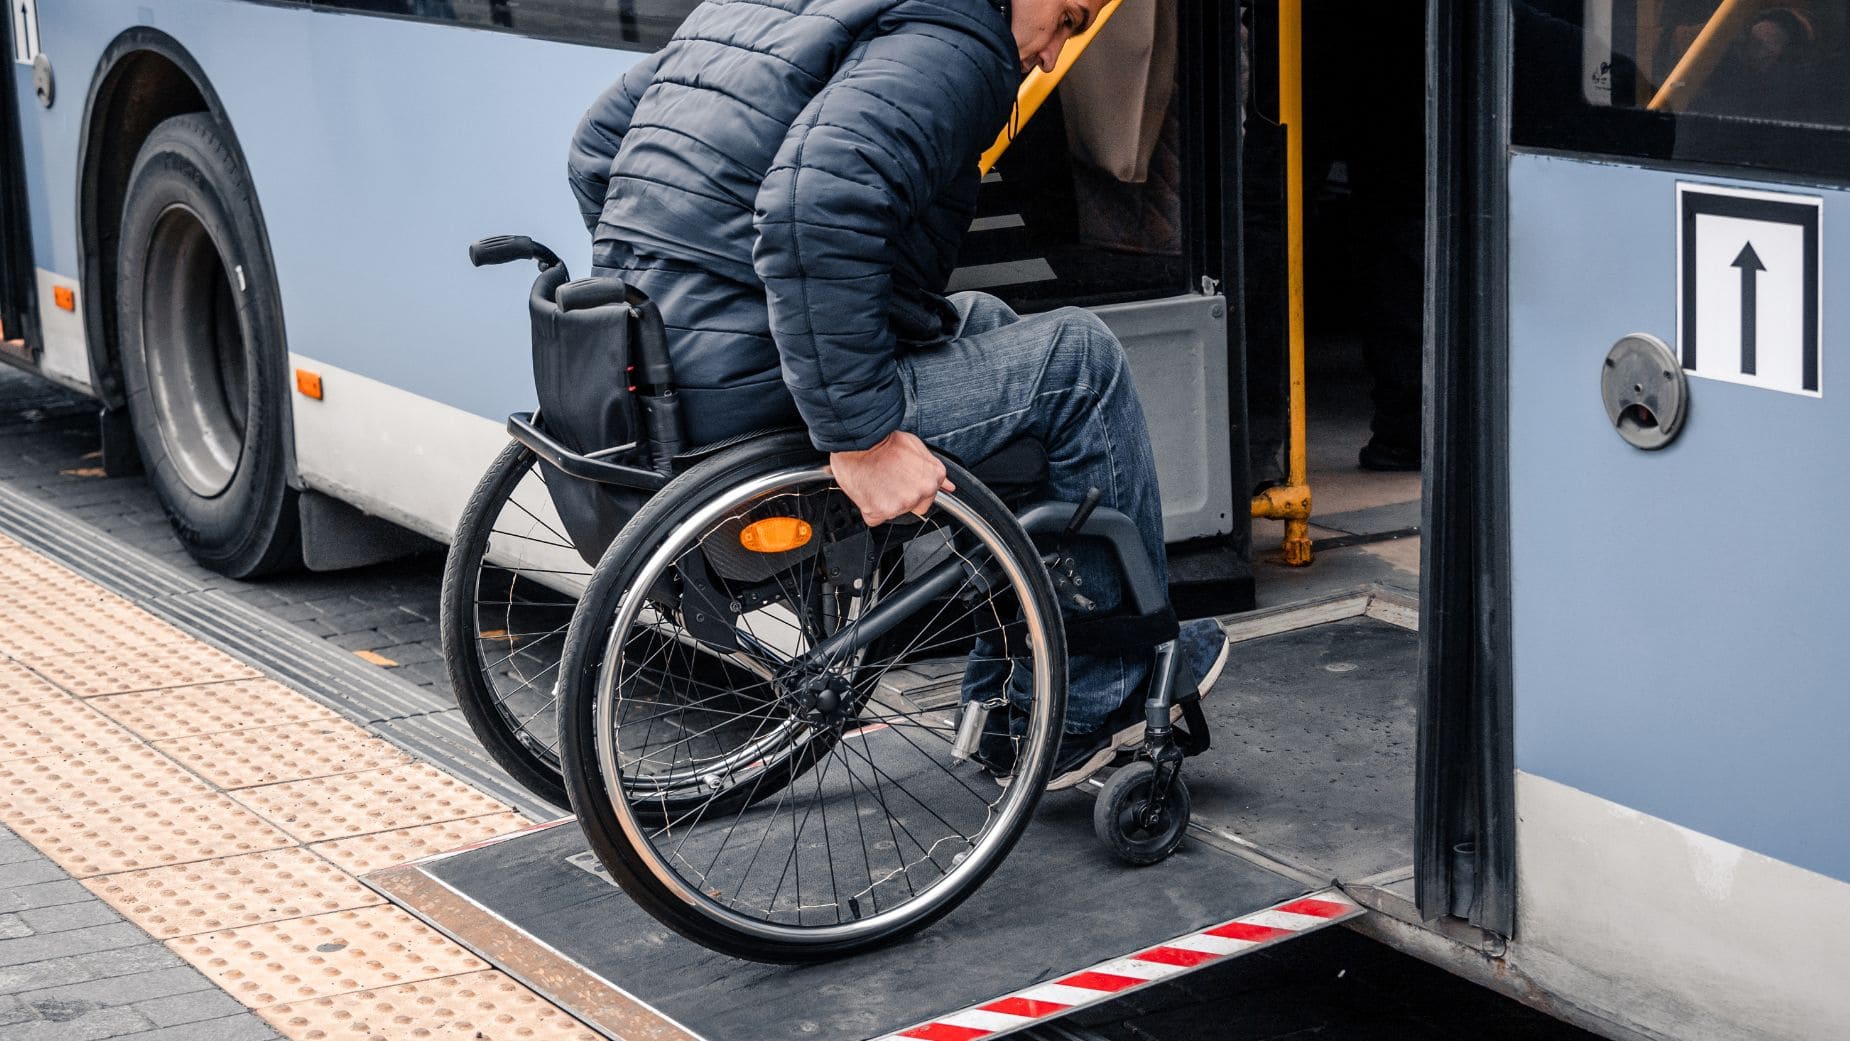 Descuento de transporte público para personas con discapacidad